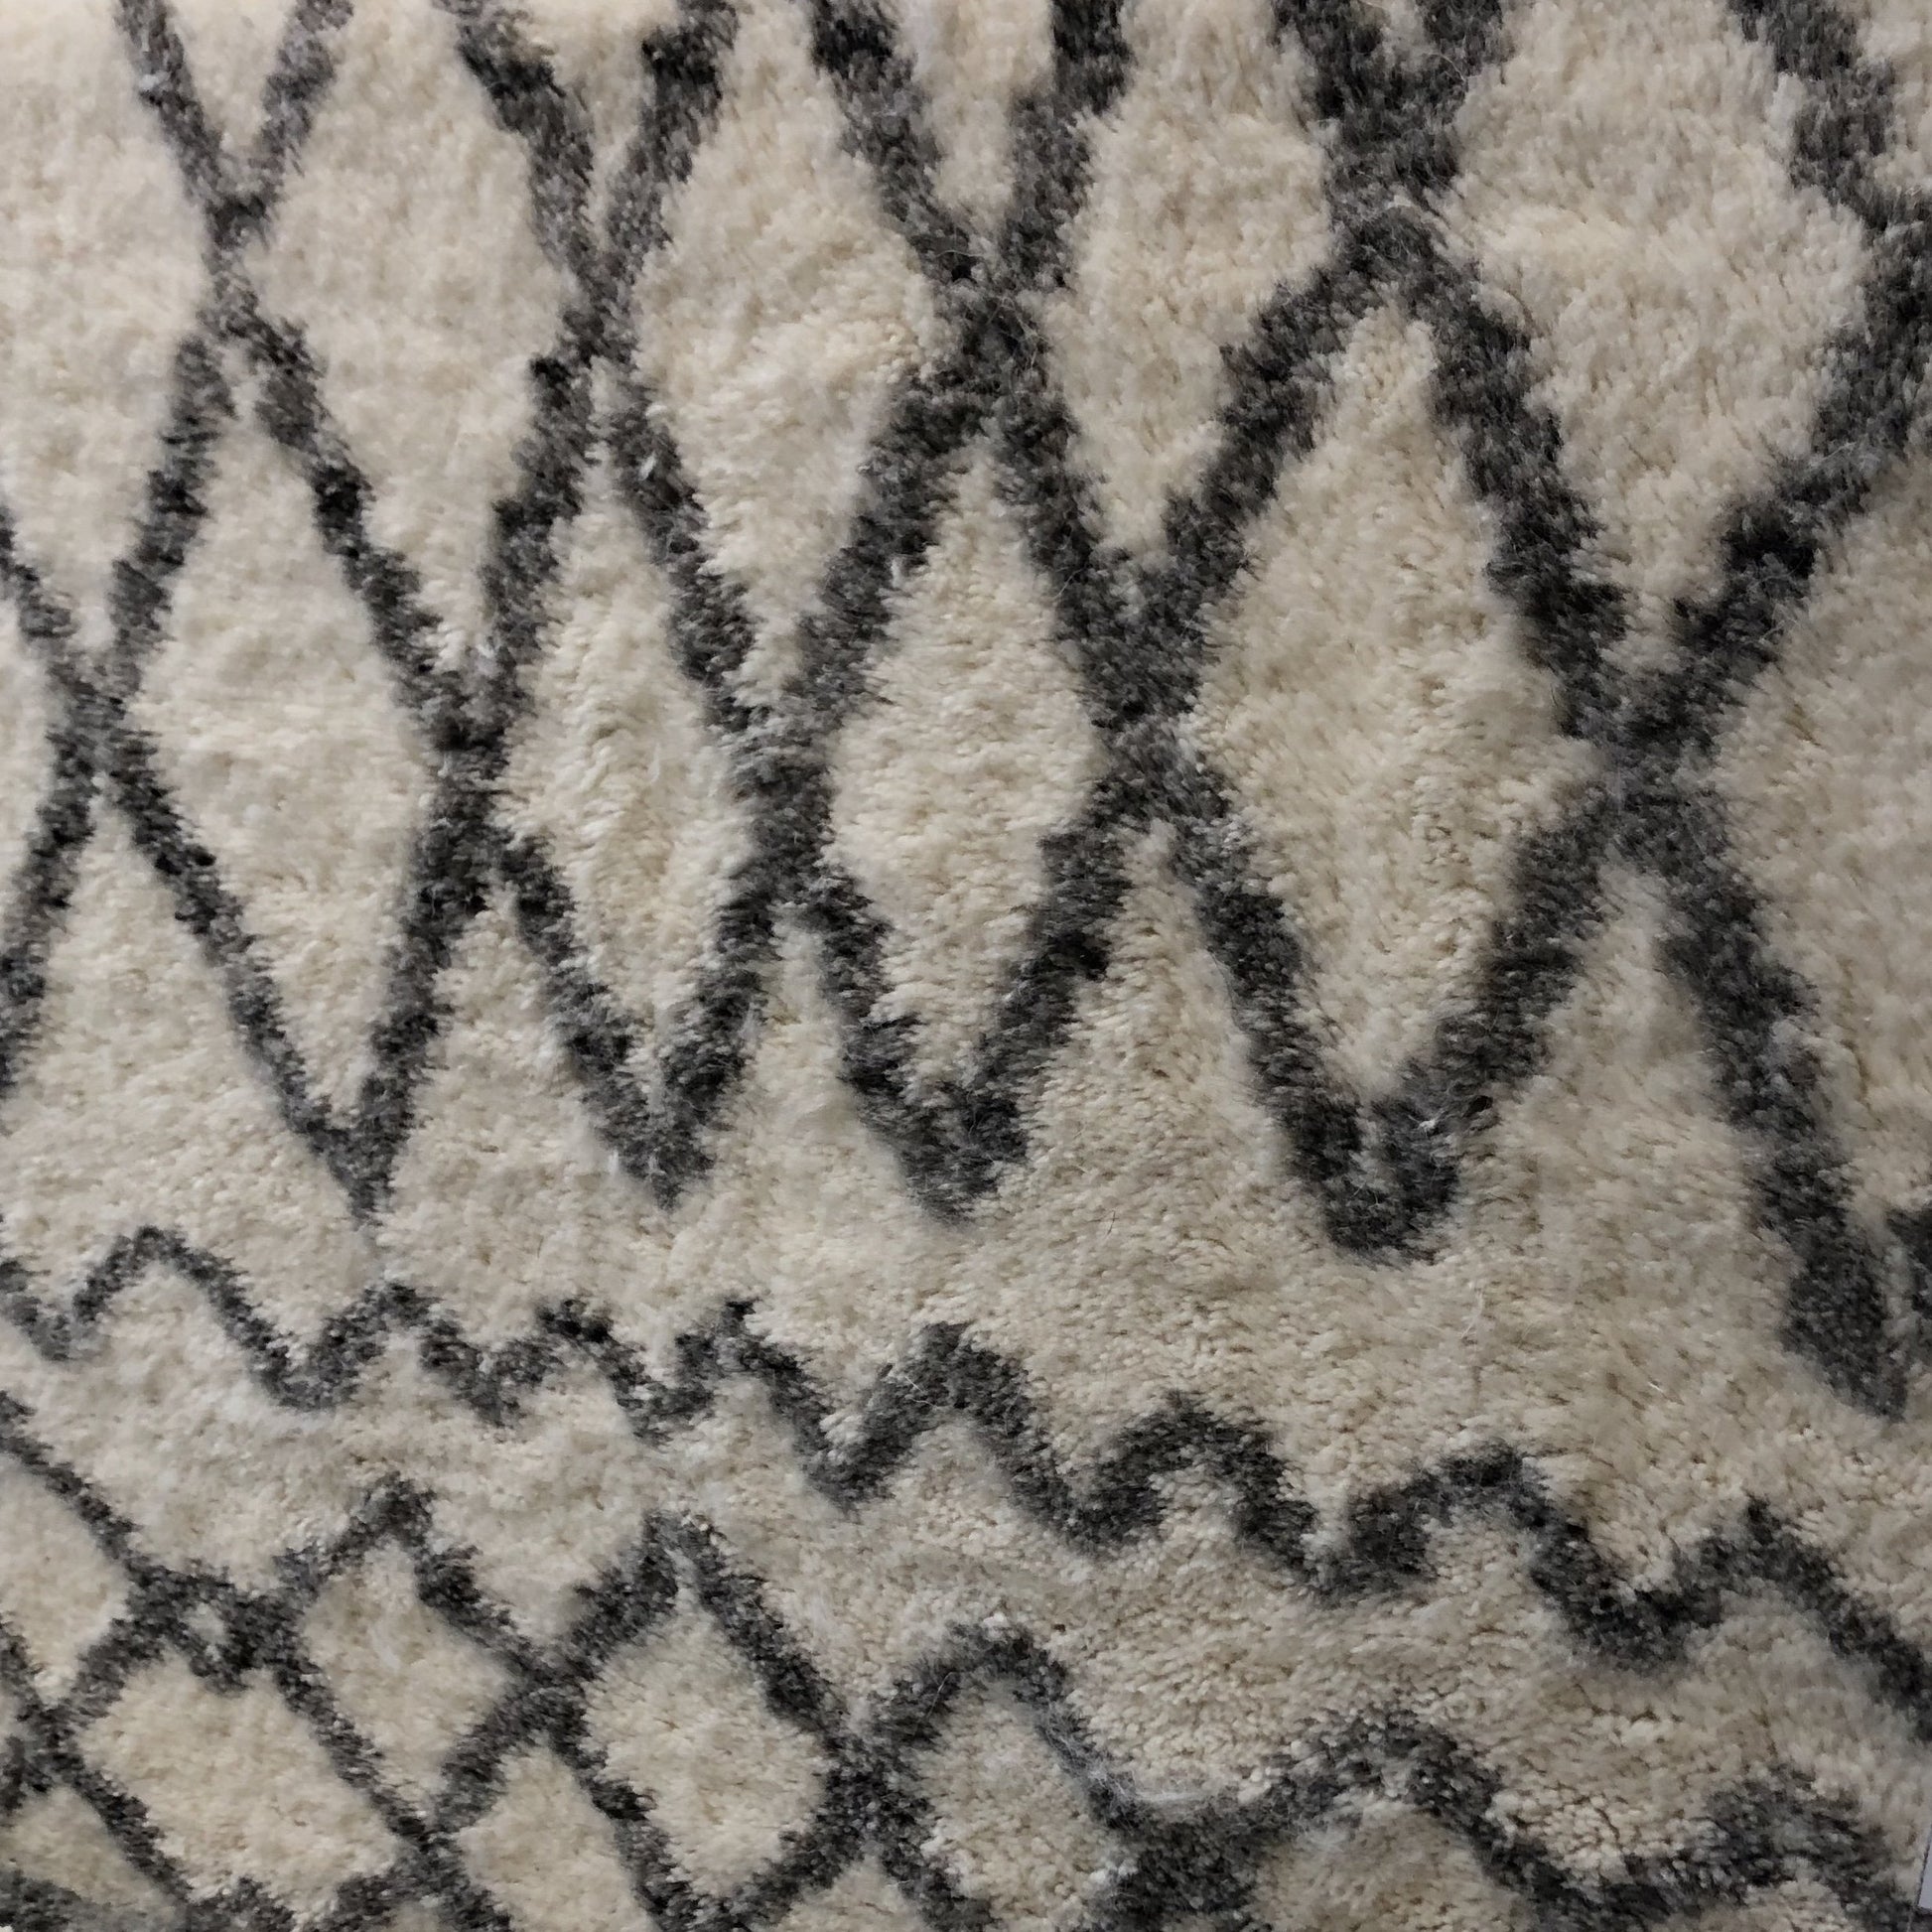 bali neutral wood rug geometric cream gray